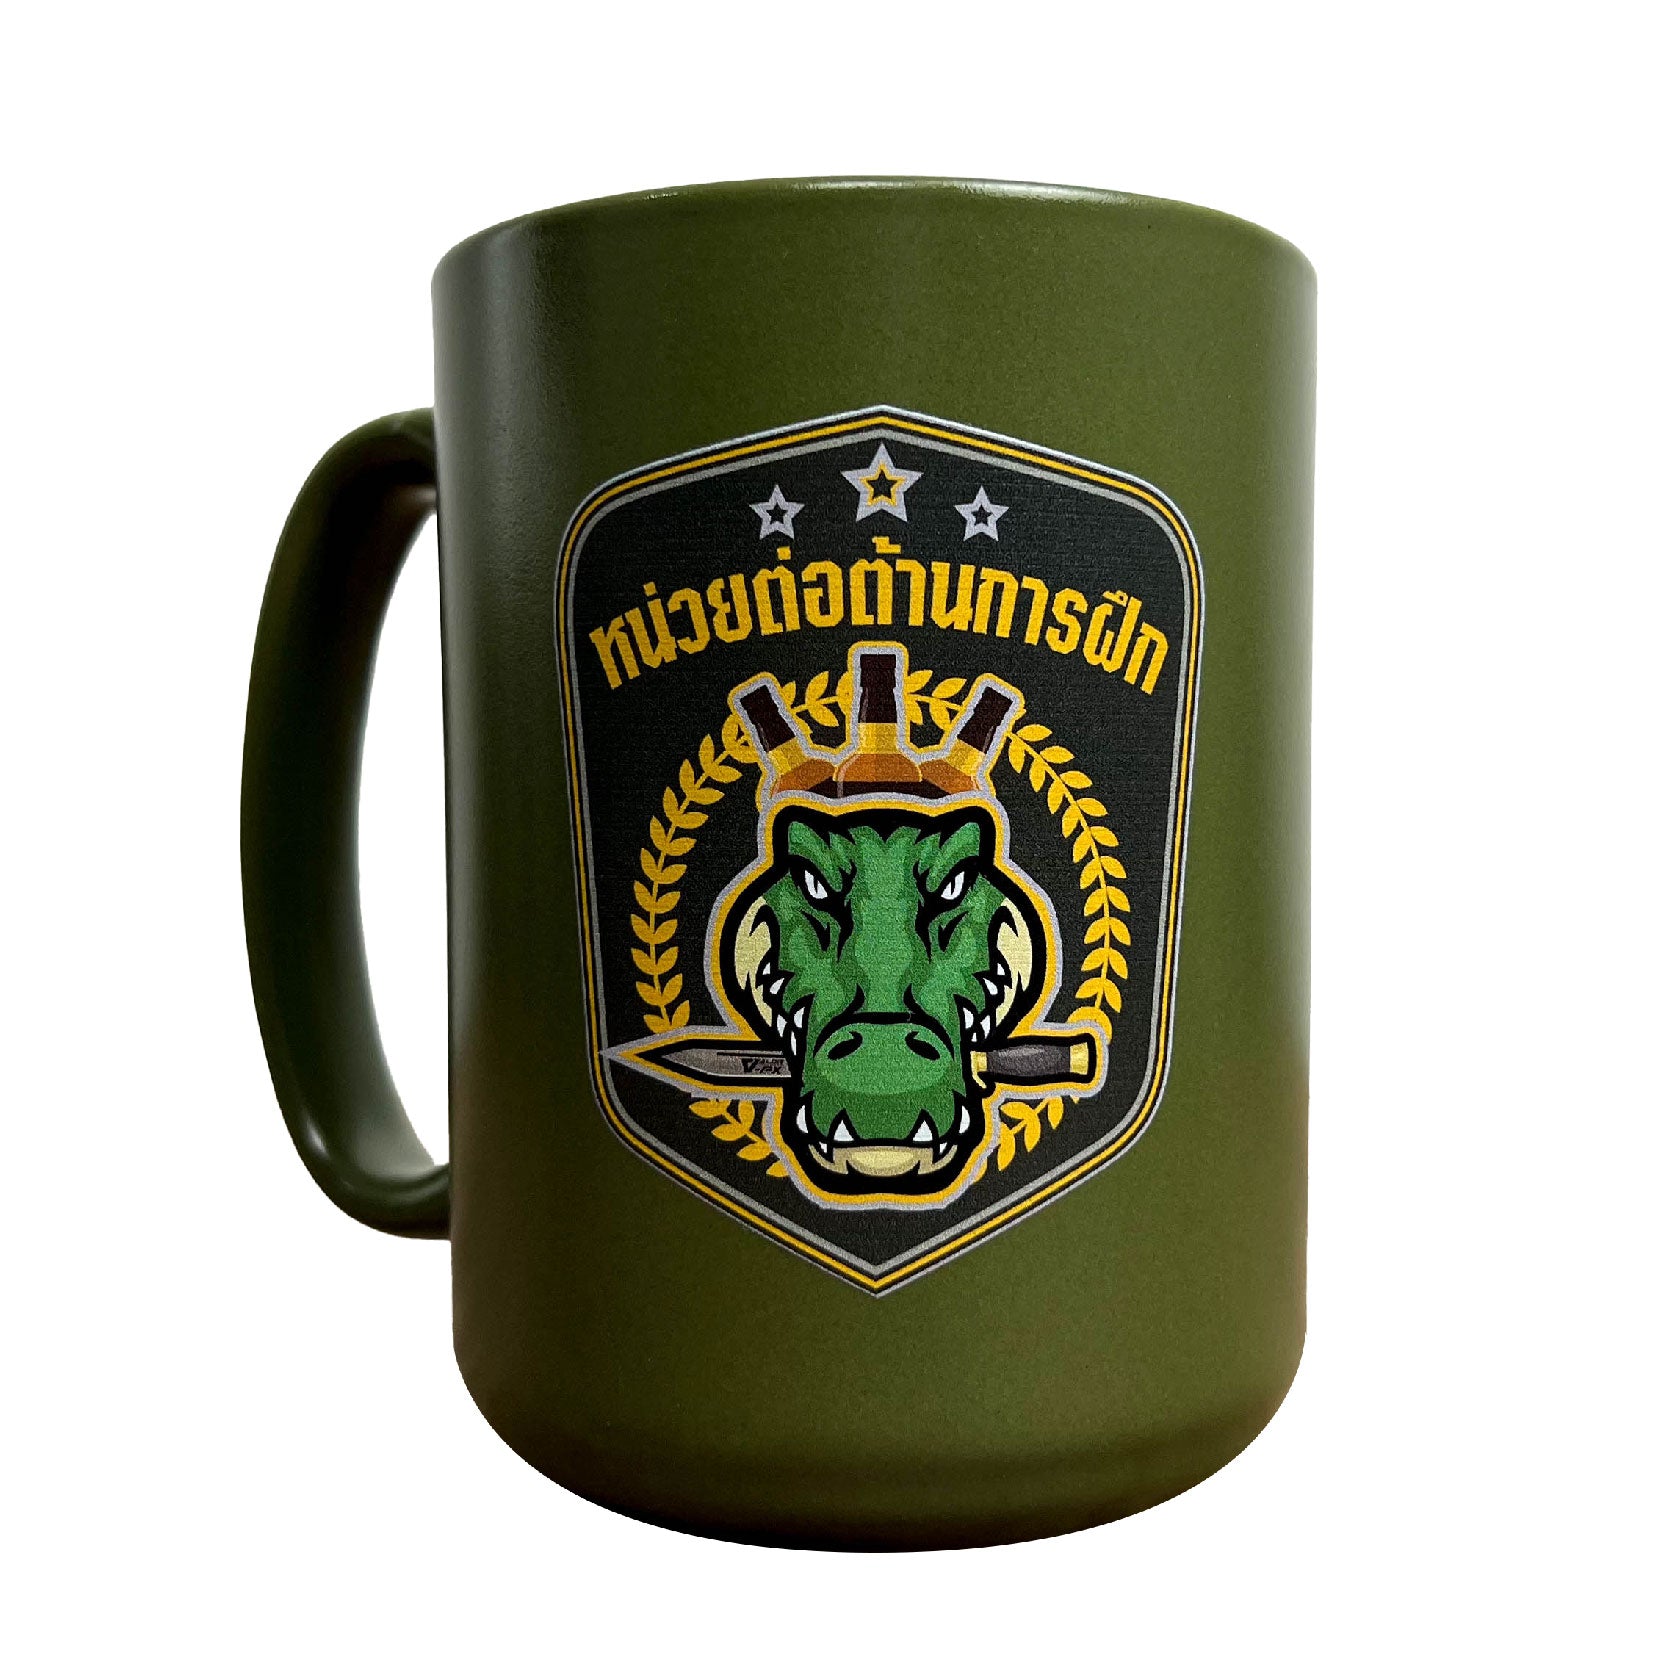 หรวจลาว Ceramic Mug แก้วกาแฟ - หน่วยต่อต้านการฝึก V.2 [Green]